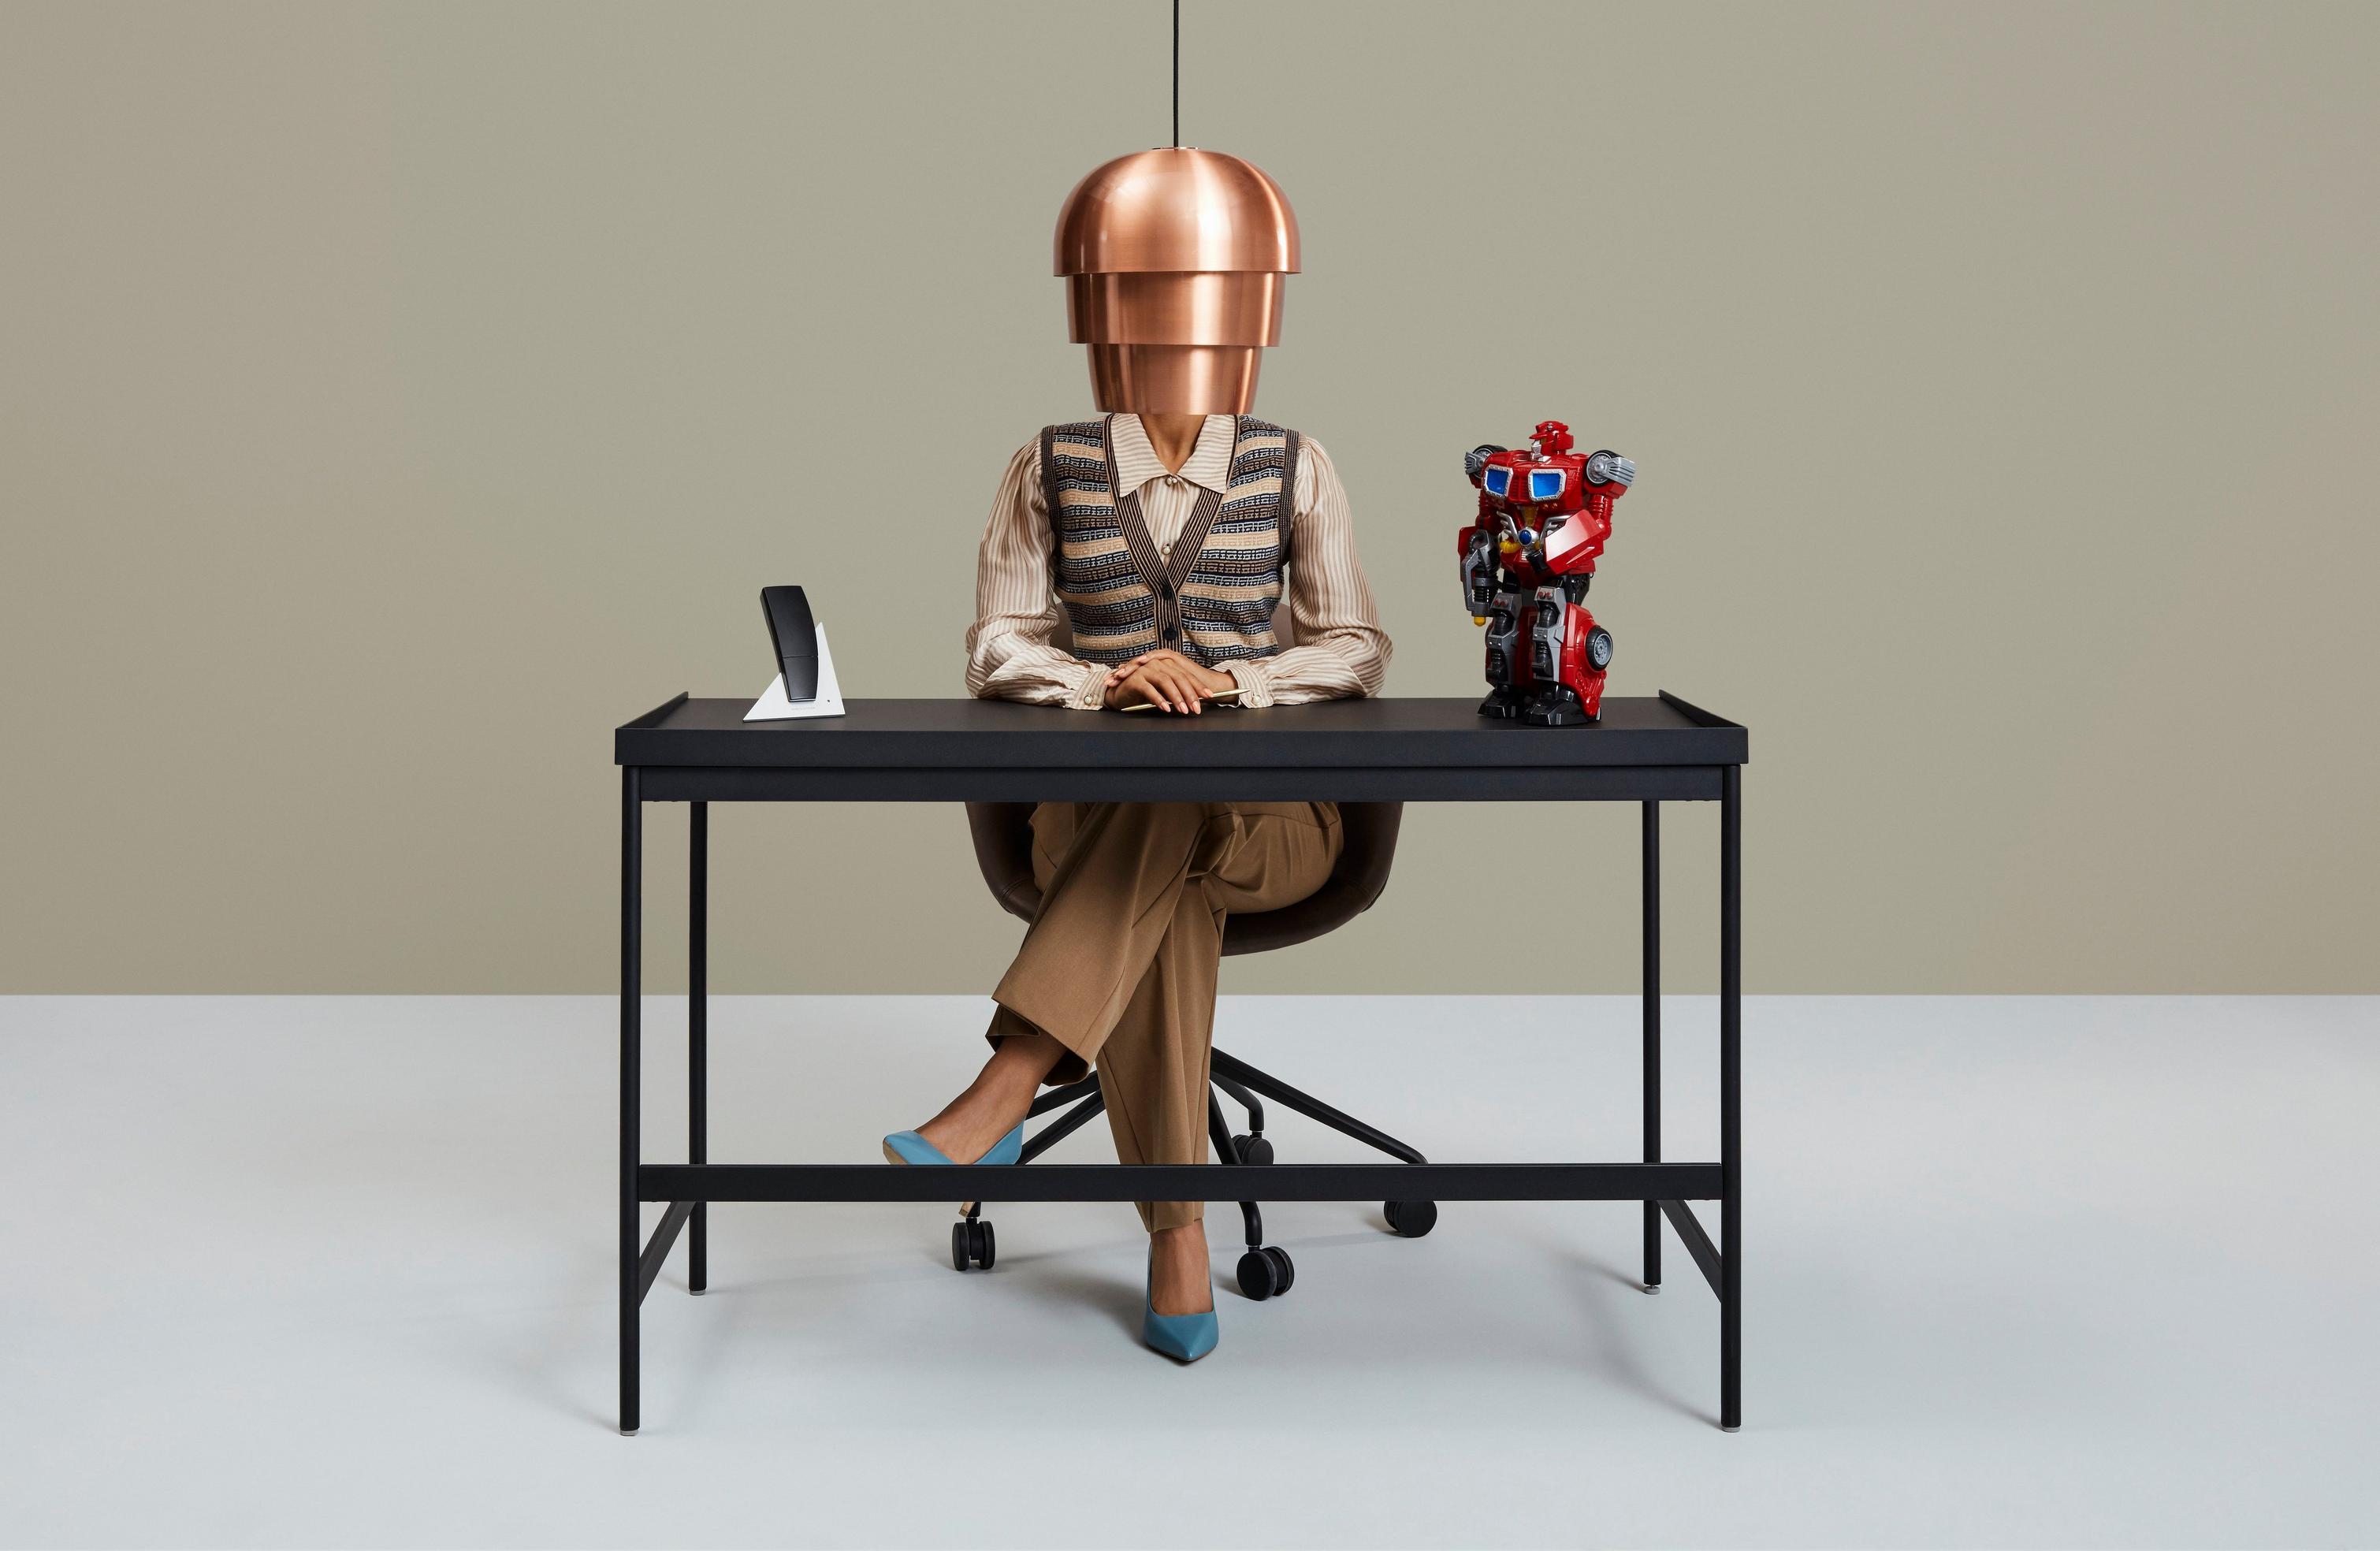 Personne à son bureau avec une lampe à abat-jour, un téléphone et une figurine robot colorée.